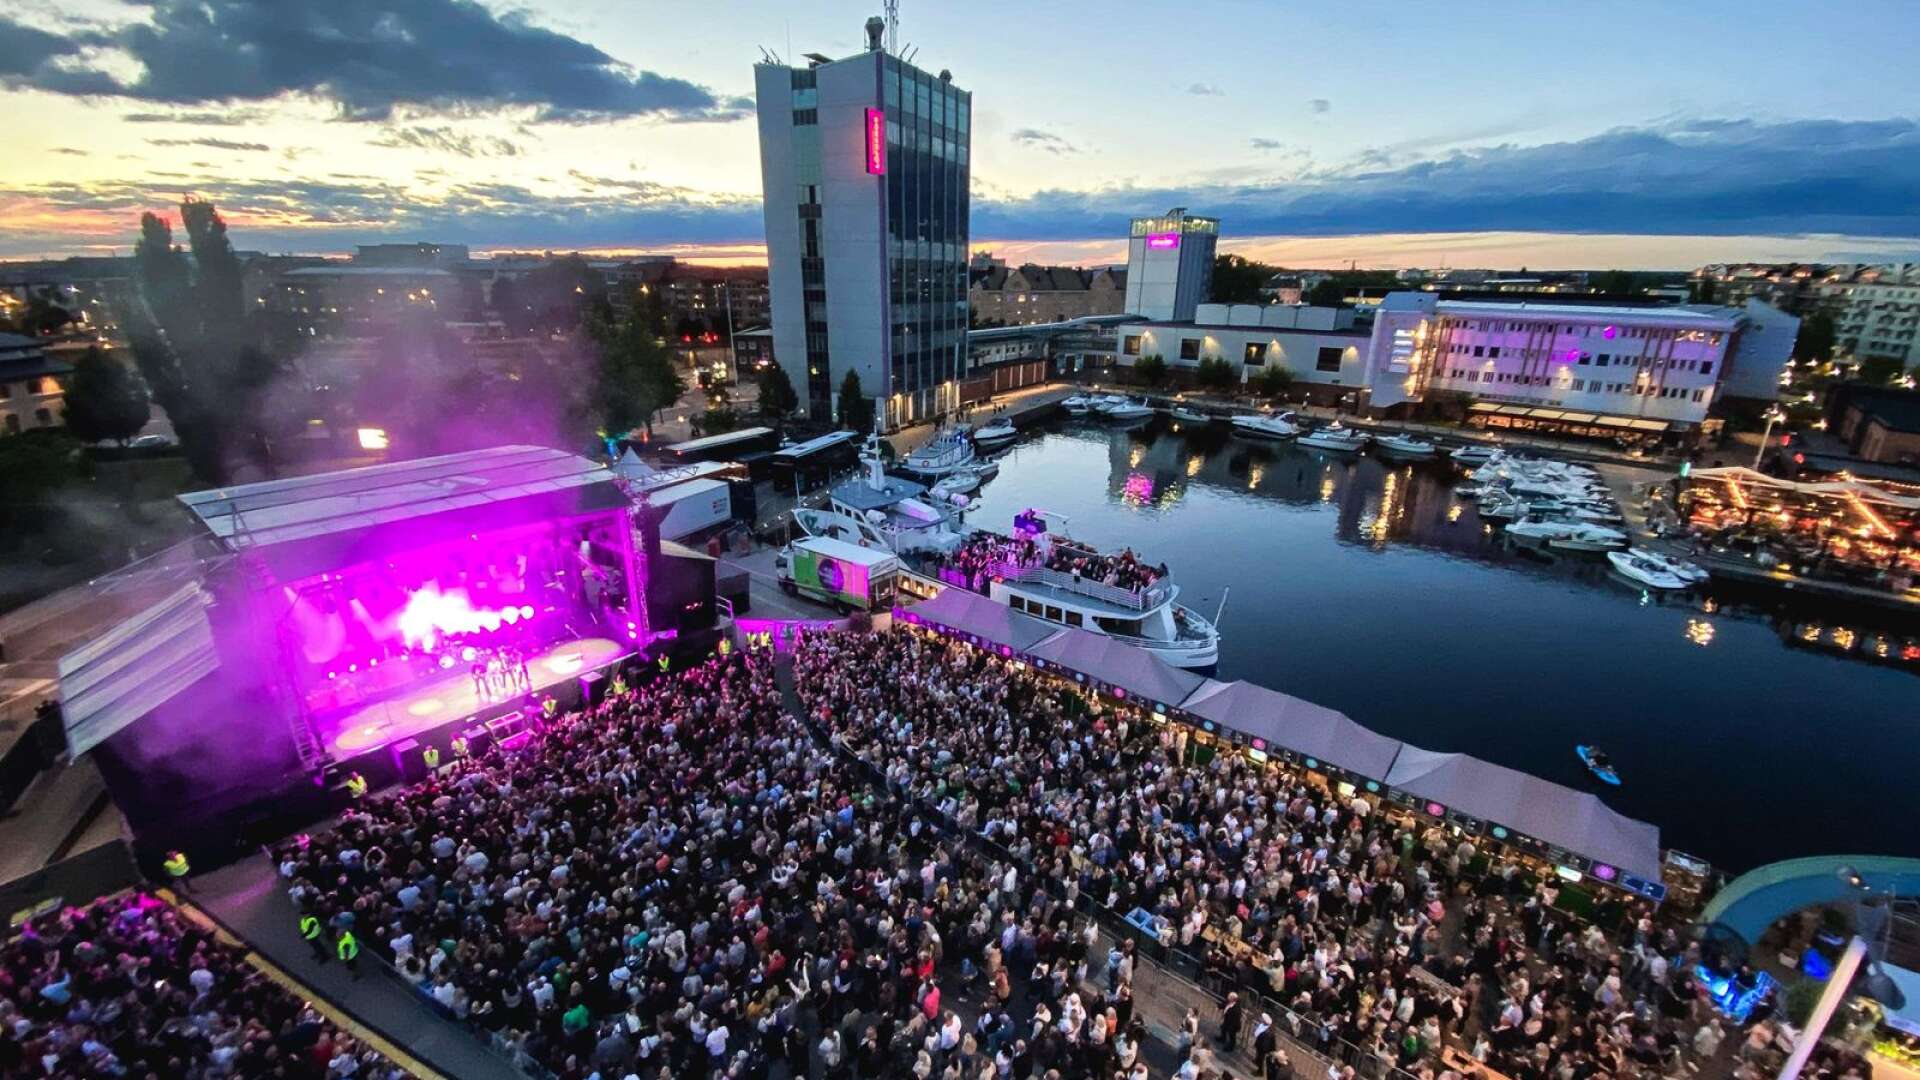 Så här såg det ut när bland andra Miss Li och Magnus Uggla spelade i Inre hamn ifjol. Nu får cityfestivalen ett namn och årets artister är klara.